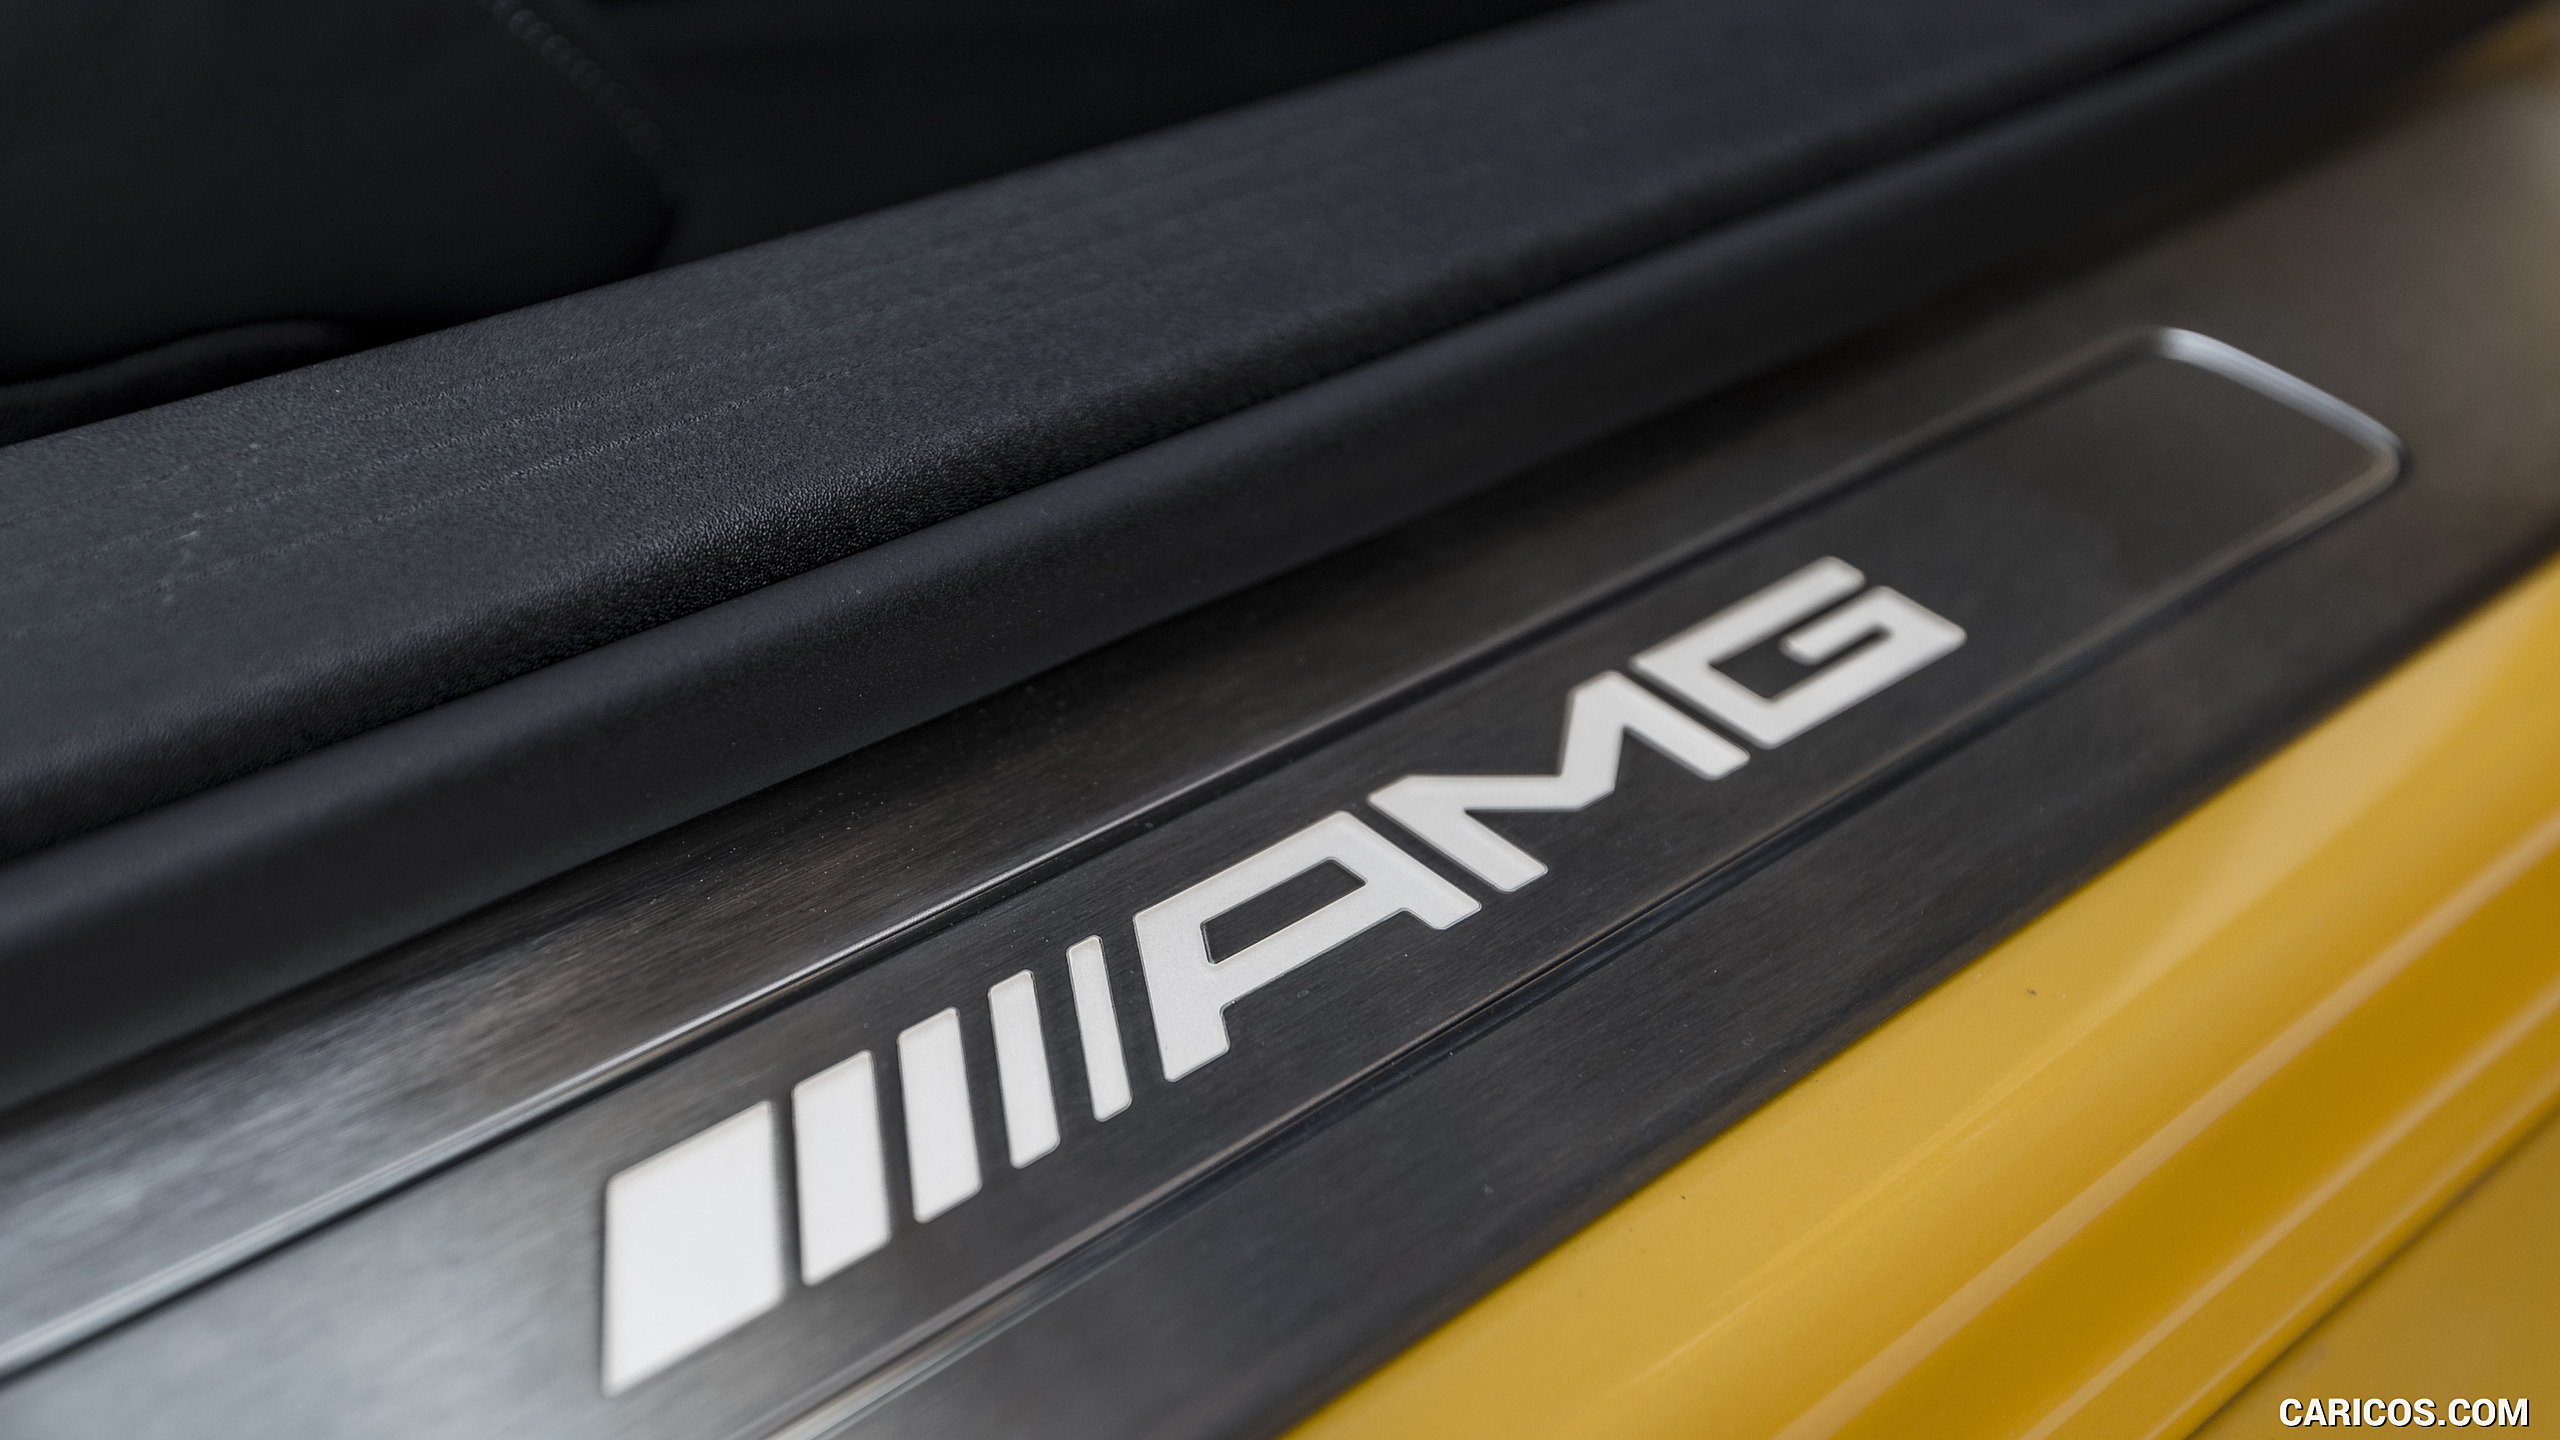 2018 Mercedes-AMG GT C Roadster - Door Sill, #265 of 350